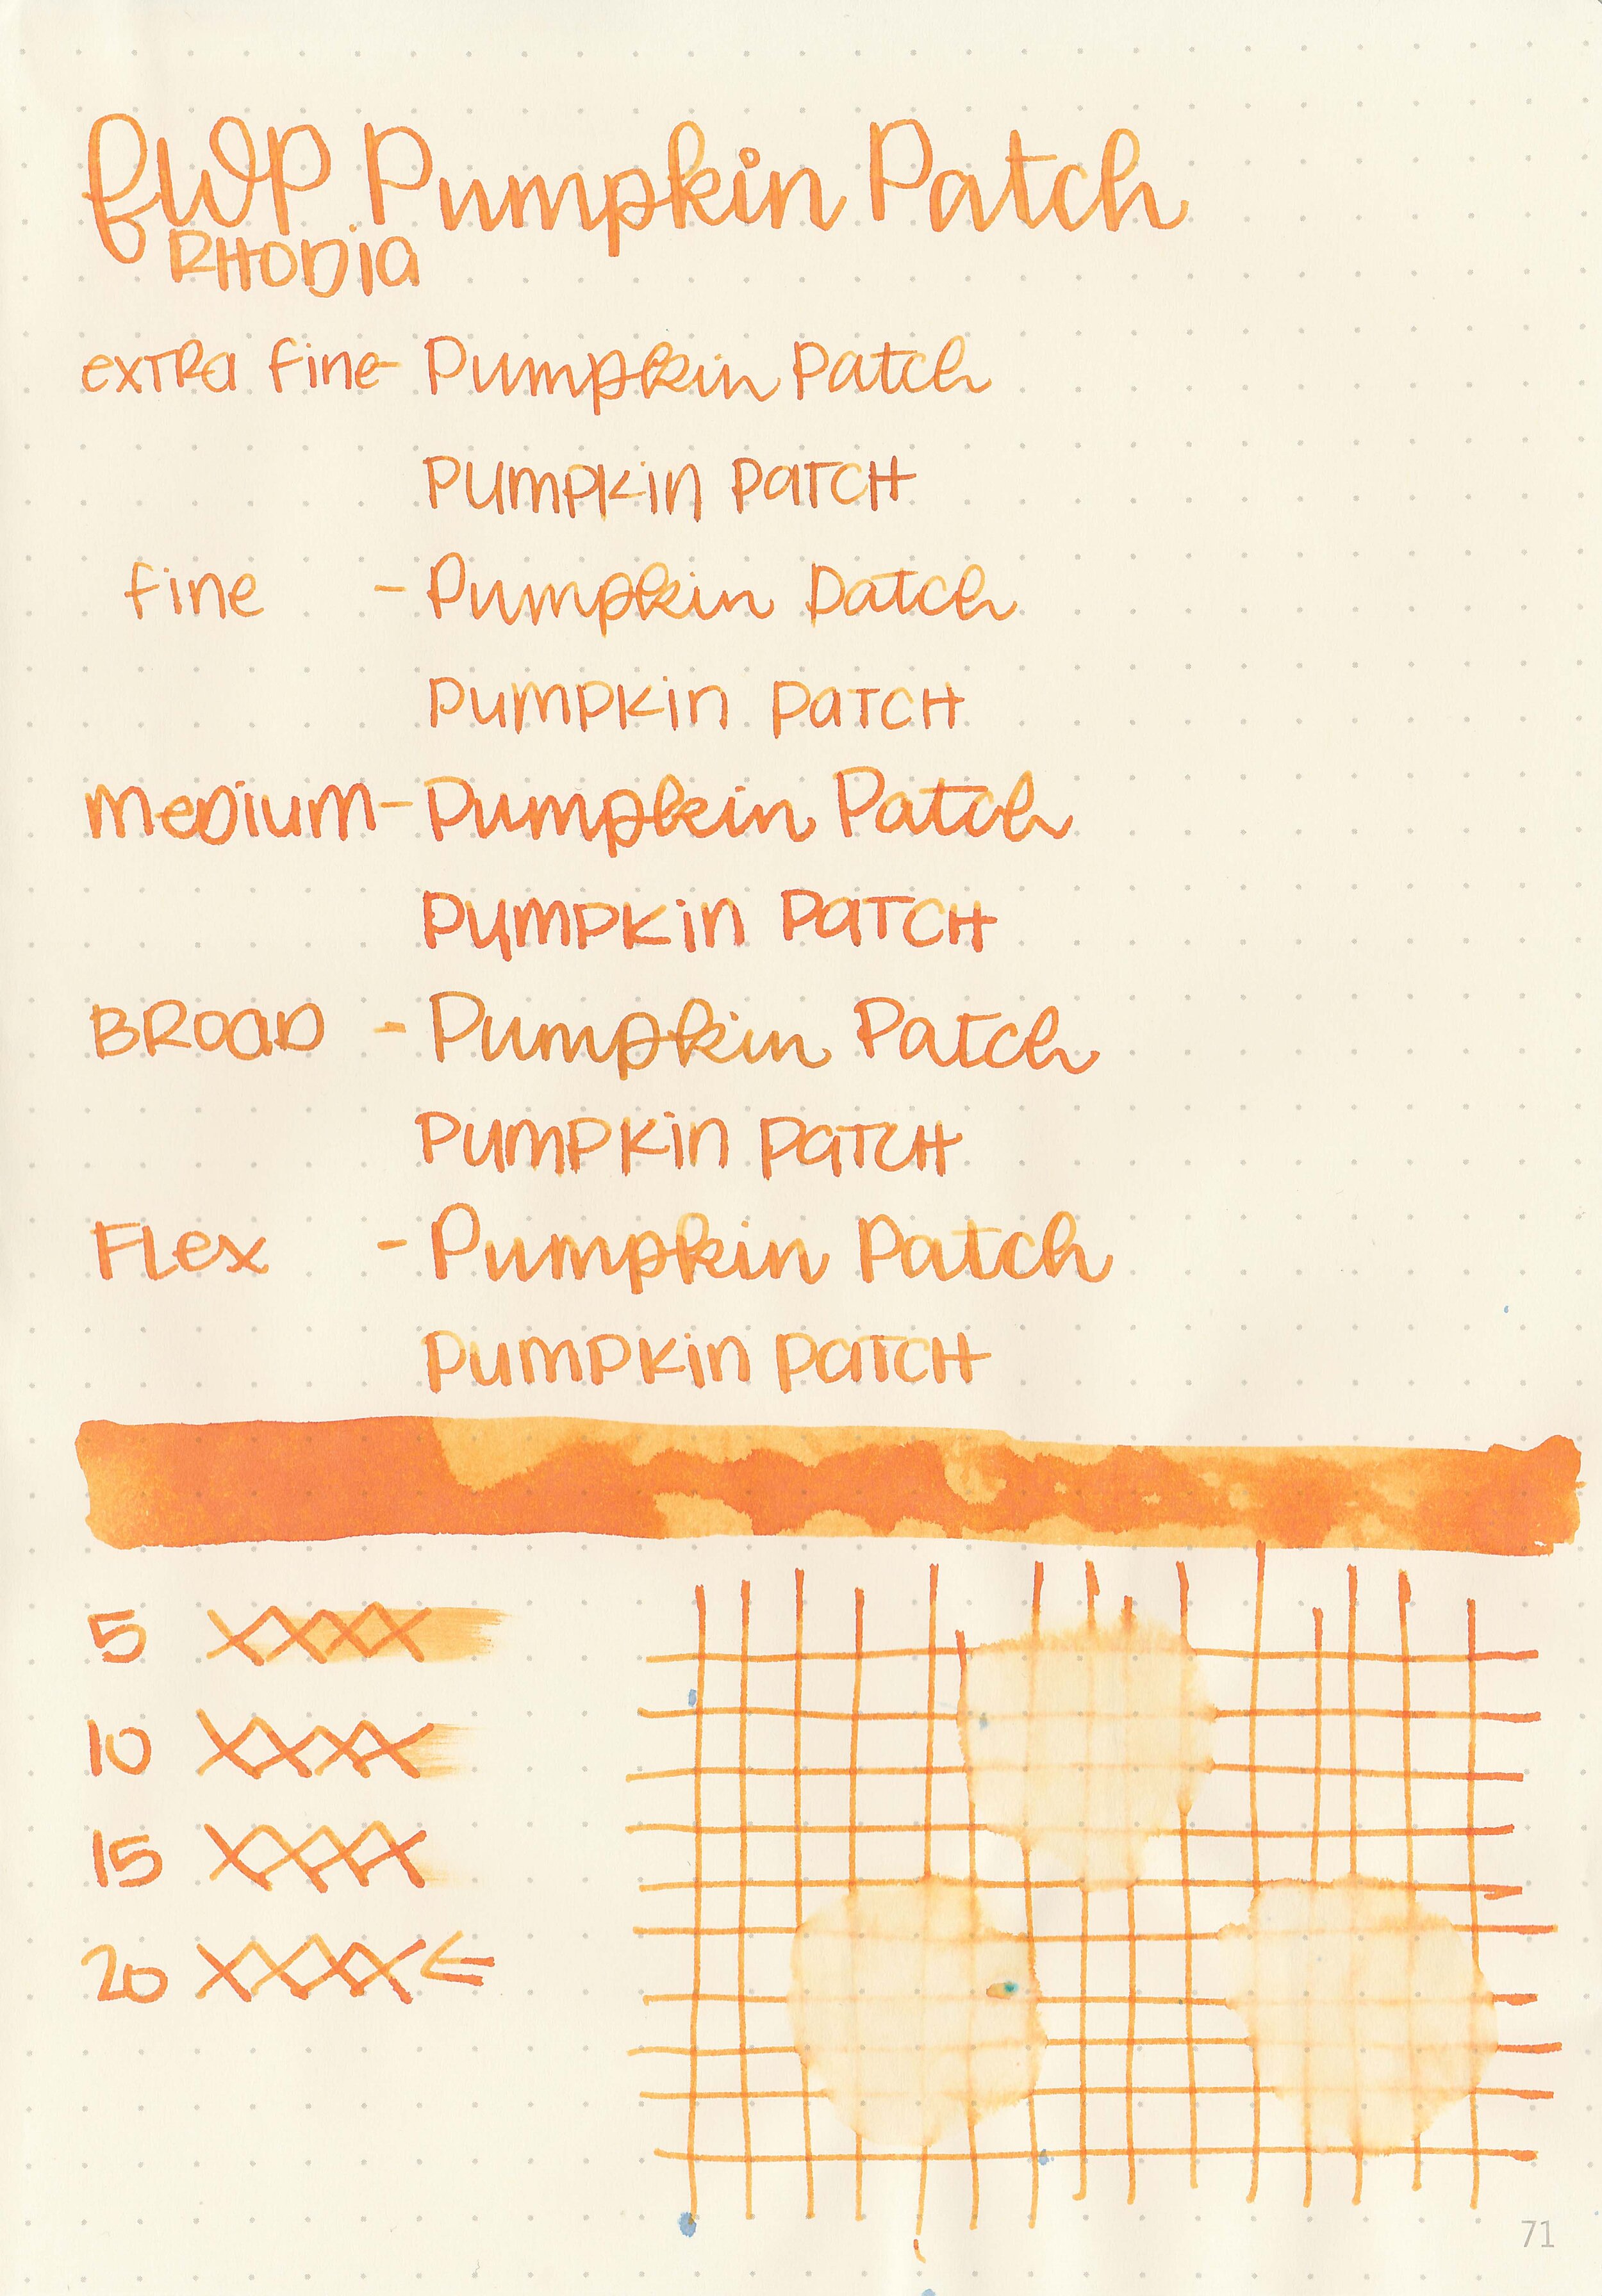 fwp-pumpkin-patch-5.jpg